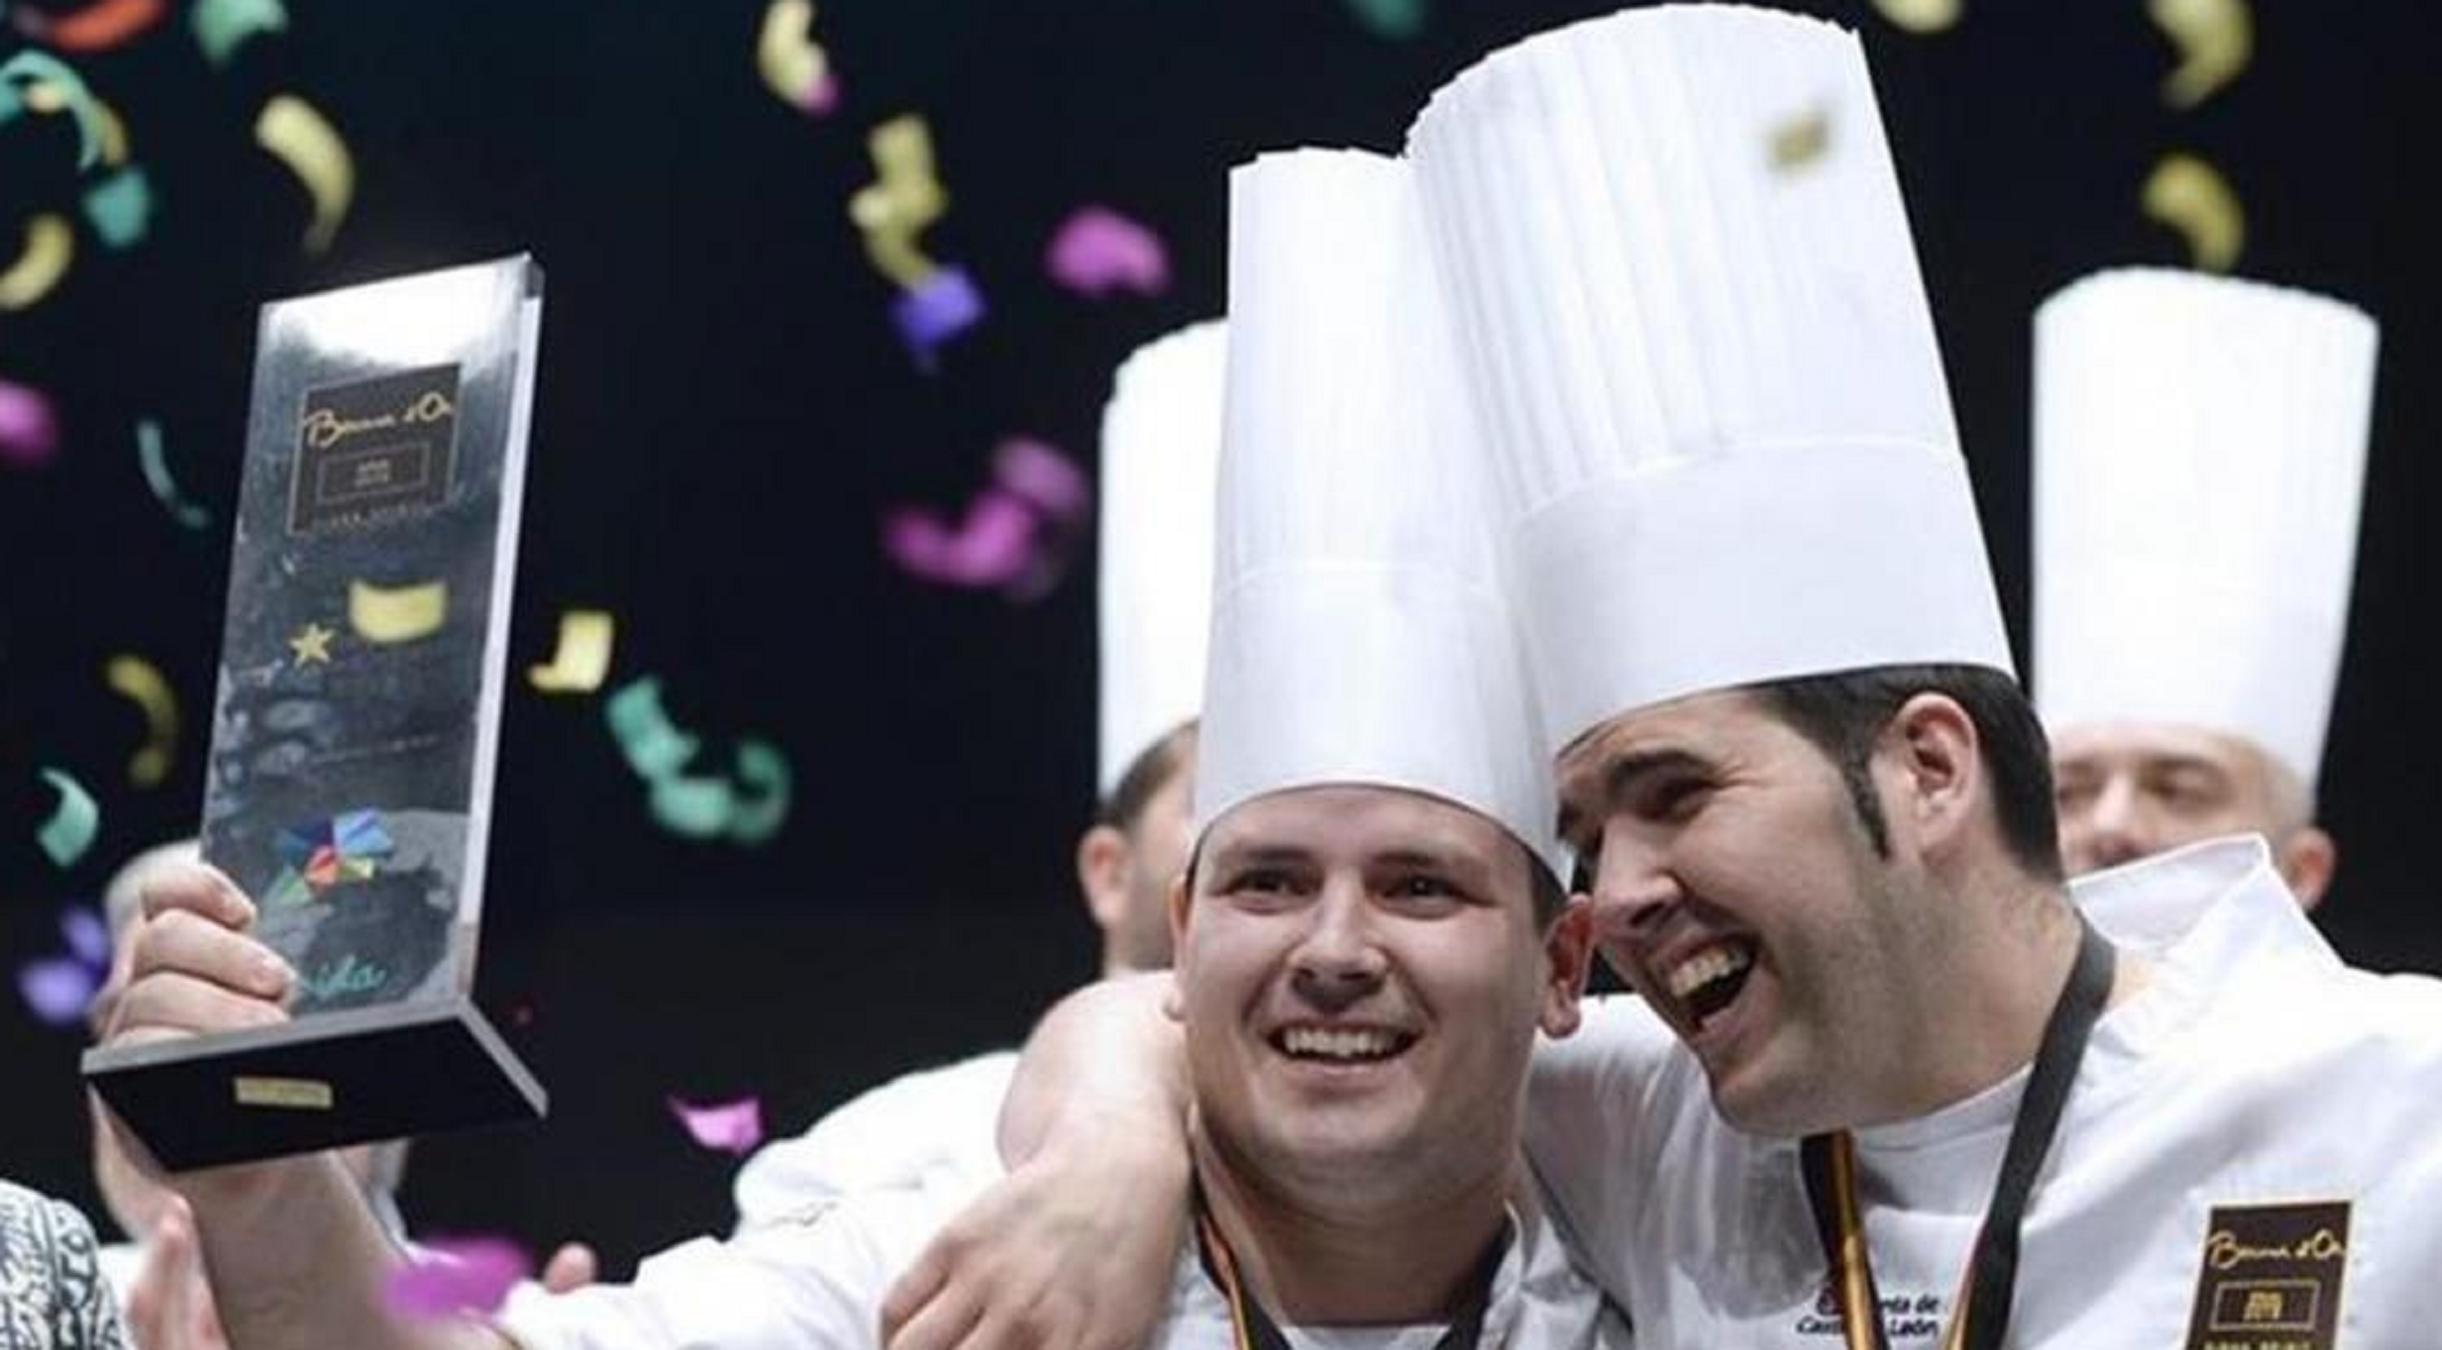 El jefe de cocina del Caelis, en el concurso culinario más prestigioso del mundo